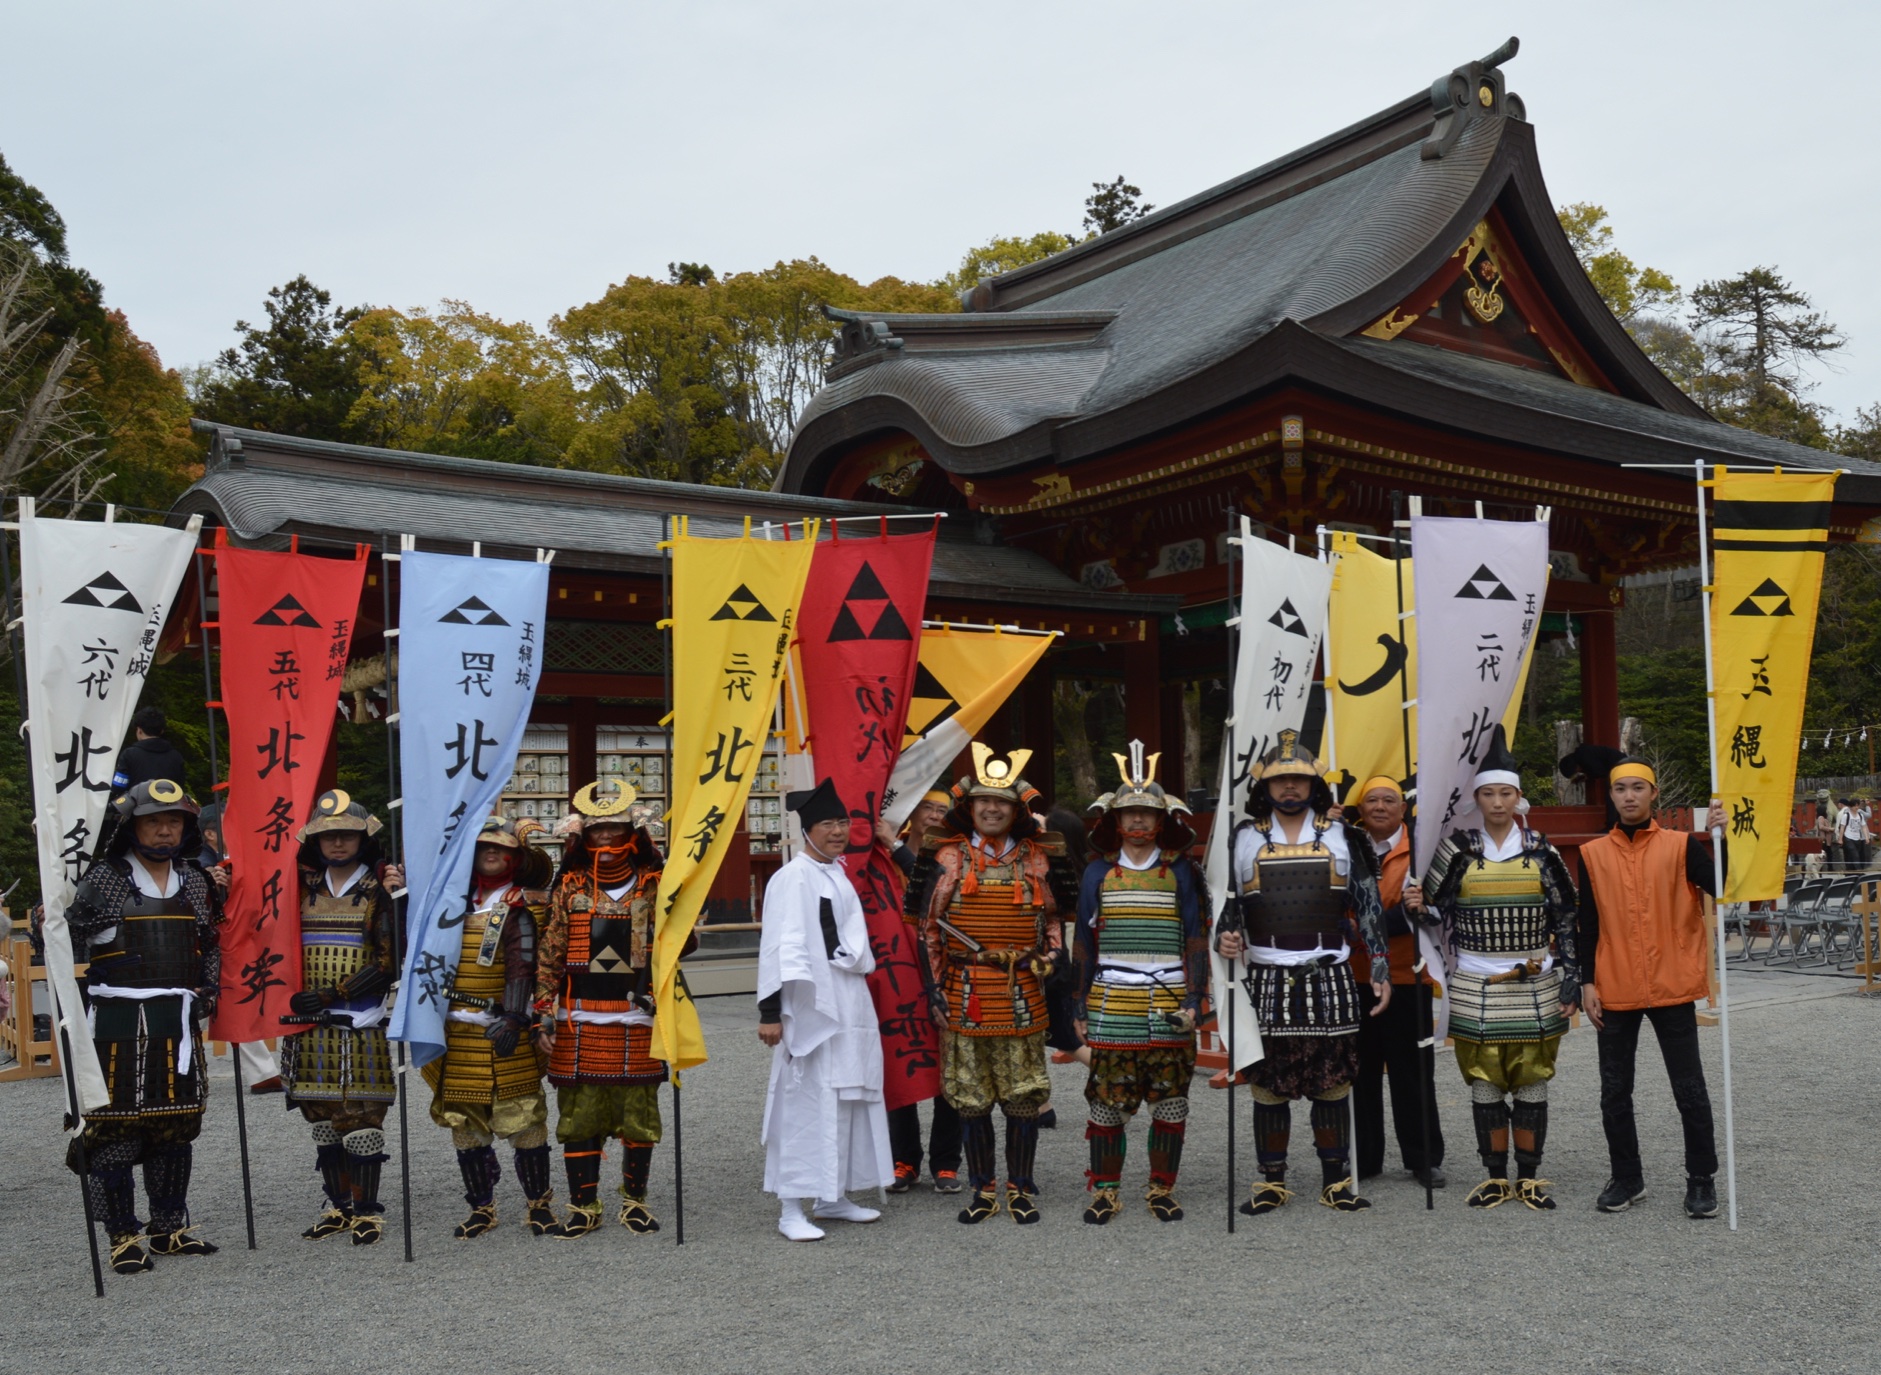 鎌倉祭り行列後の八幡宮集合写真